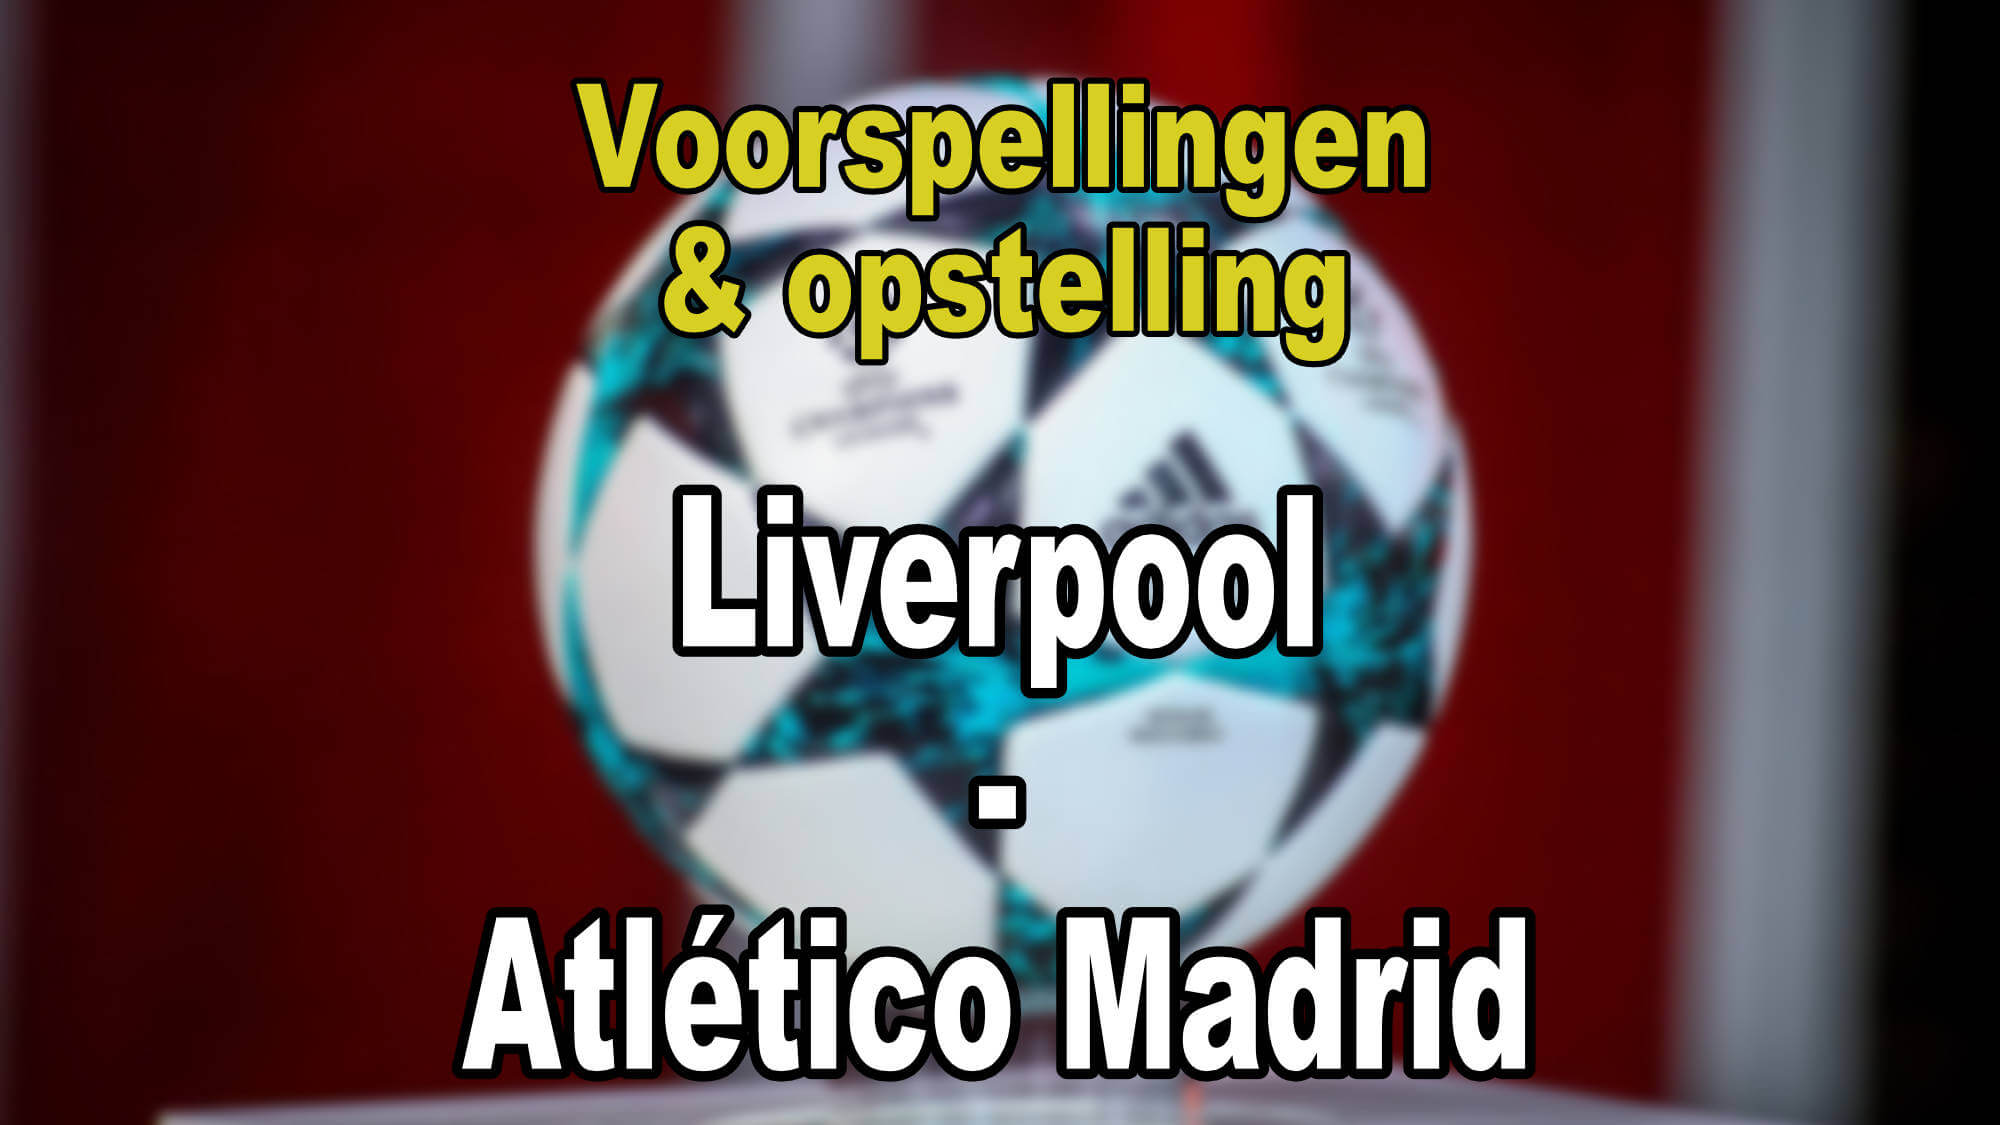 Liverpool - Atletico Madrid voorspellingen en opstellingen